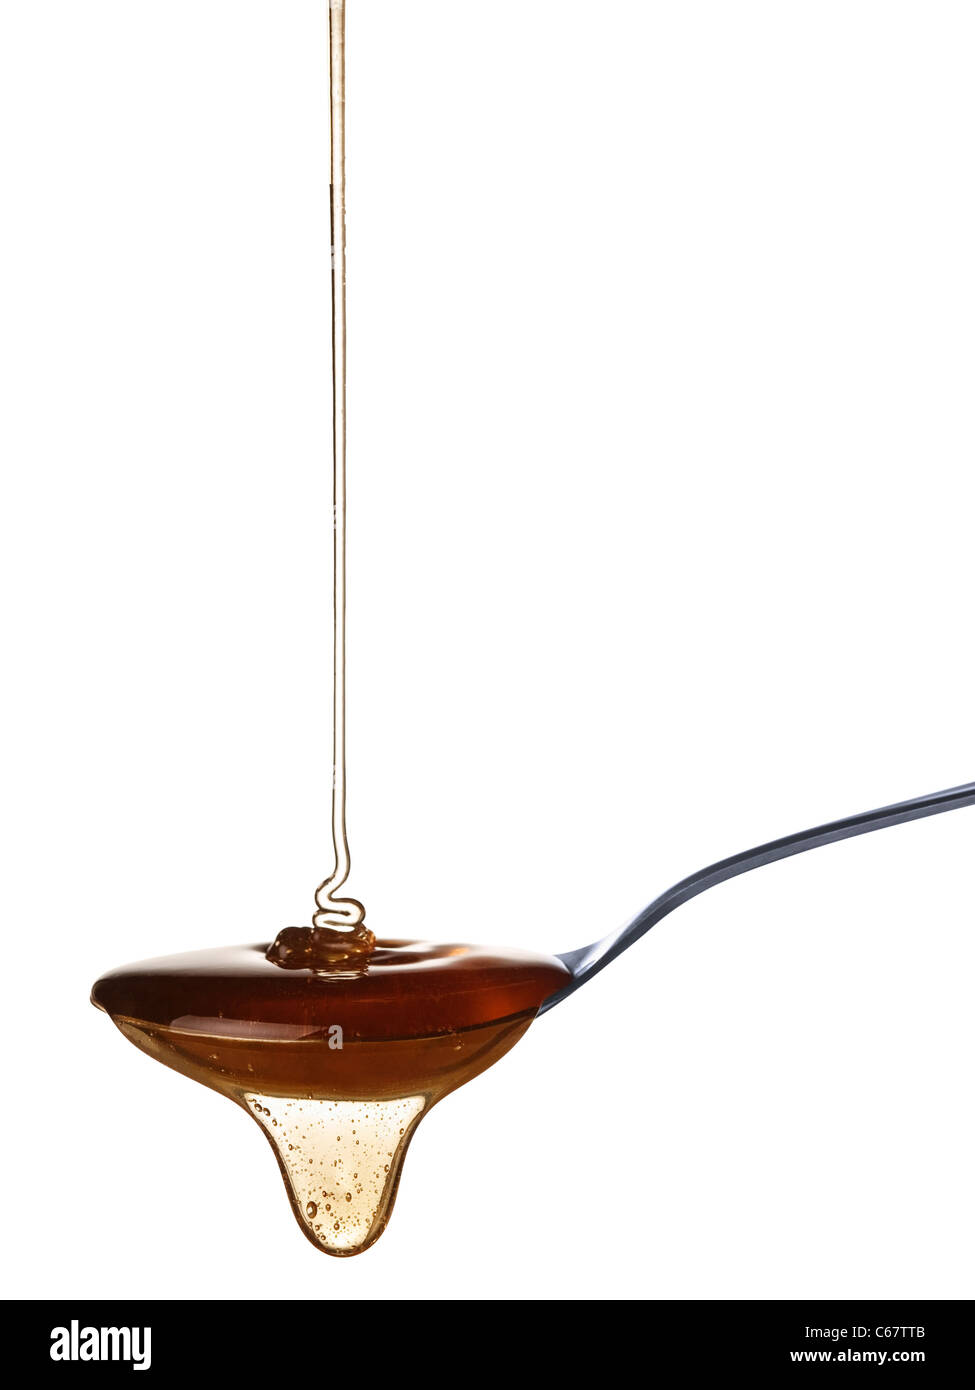 La miel lentamente cae en la cuchara. Foto de stock